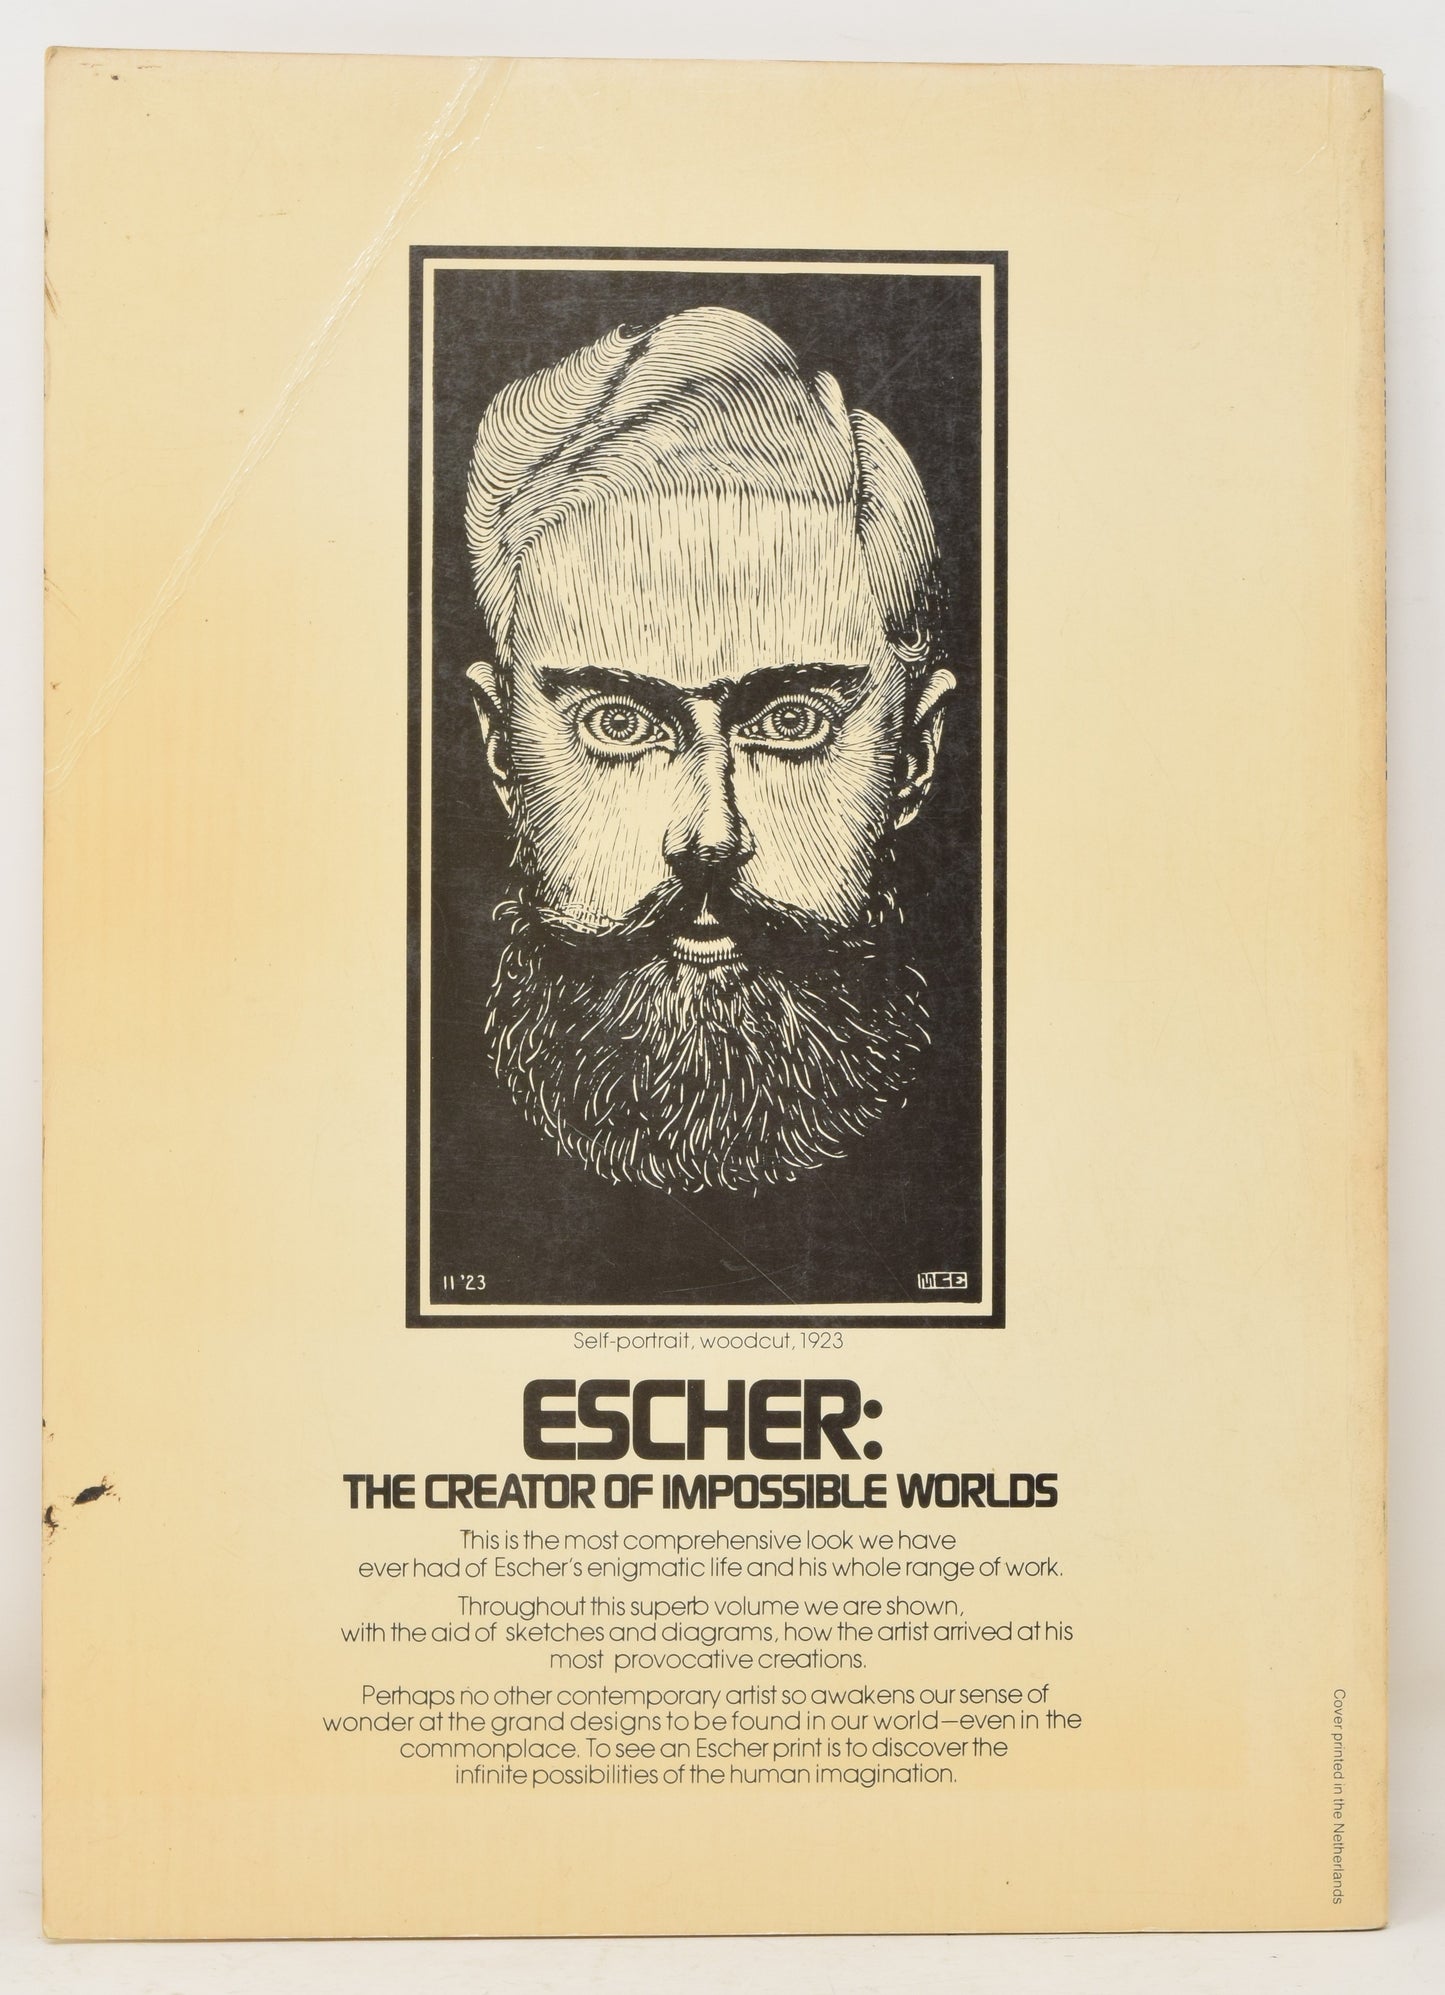 Magic Mirror Of M.C. Escher SC Ballantine 1976 1st Edition Bruno Ernst